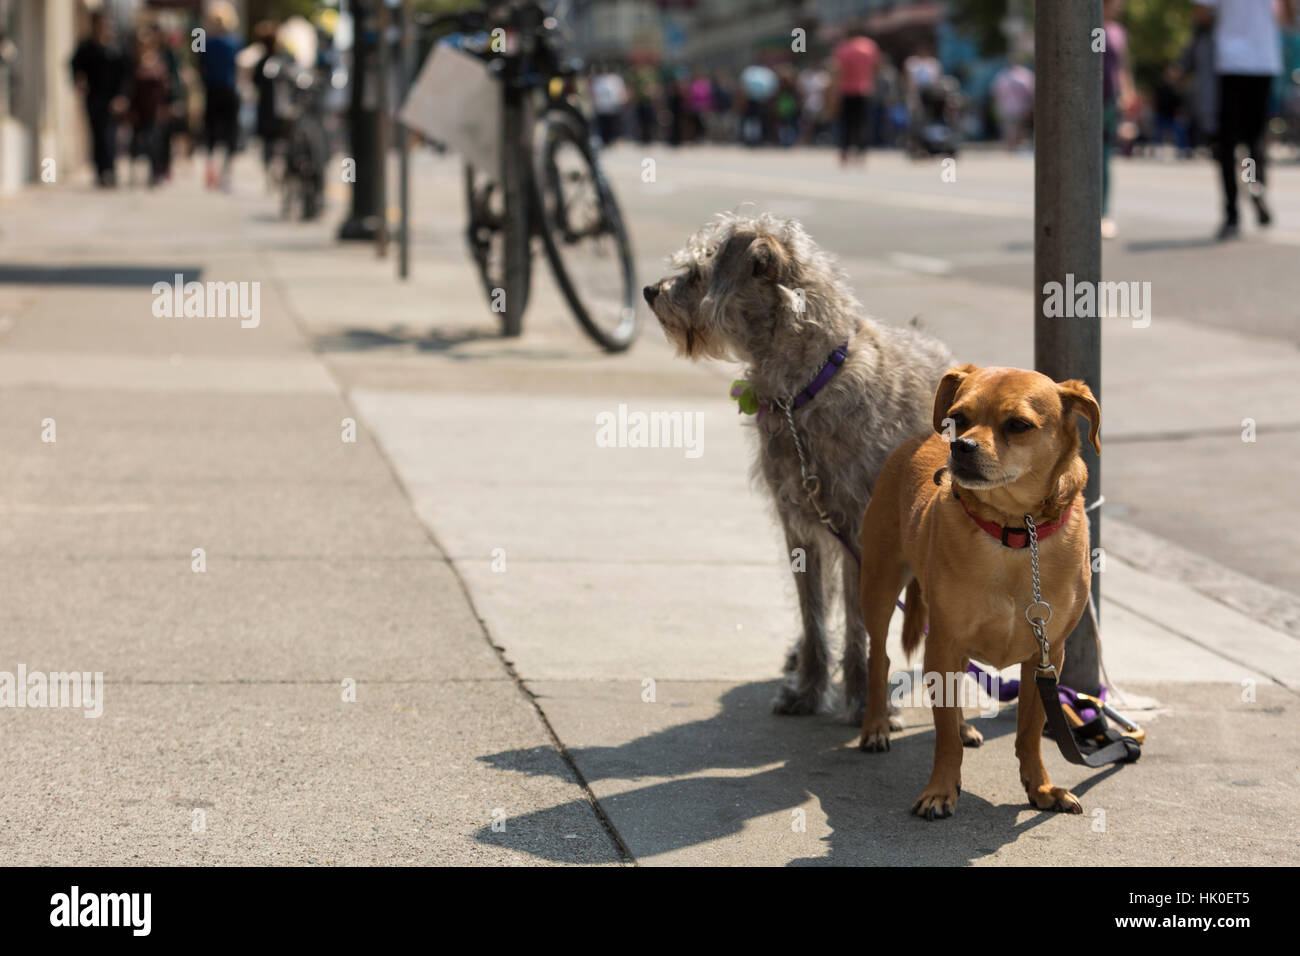 Les chiens attendent leurs propriétaires. Dimanche Rues, Valencia St., Mission, Aug, 2016. San Francisco, Californie, États-Unis. Banque D'Images